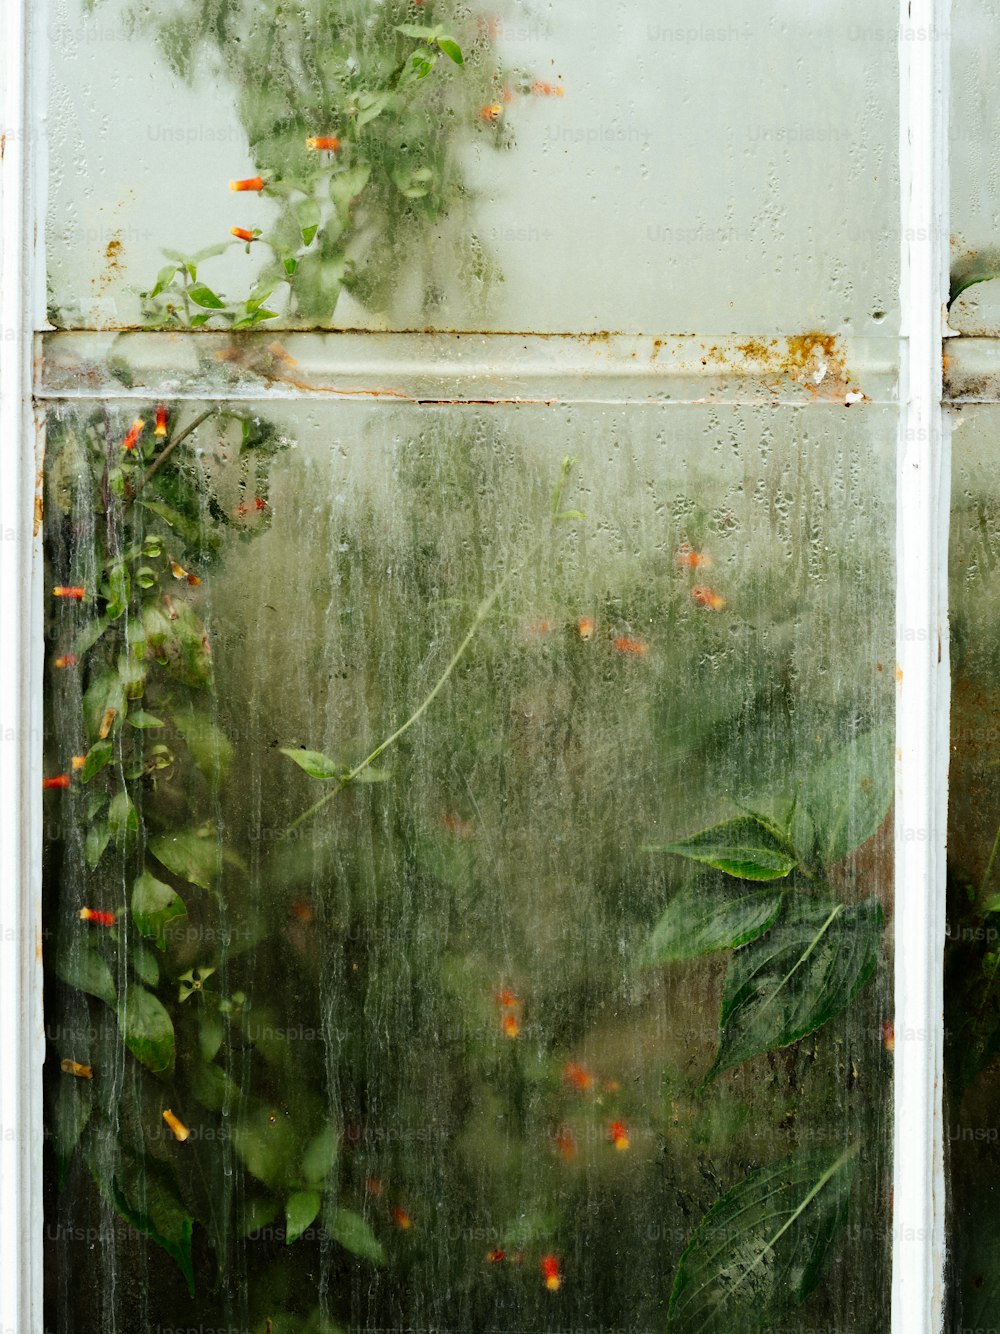 많은 식물이 자라는 창문